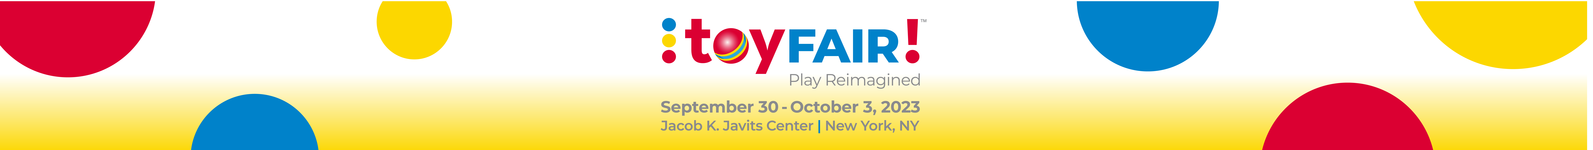 Toy Fair 2023 logo